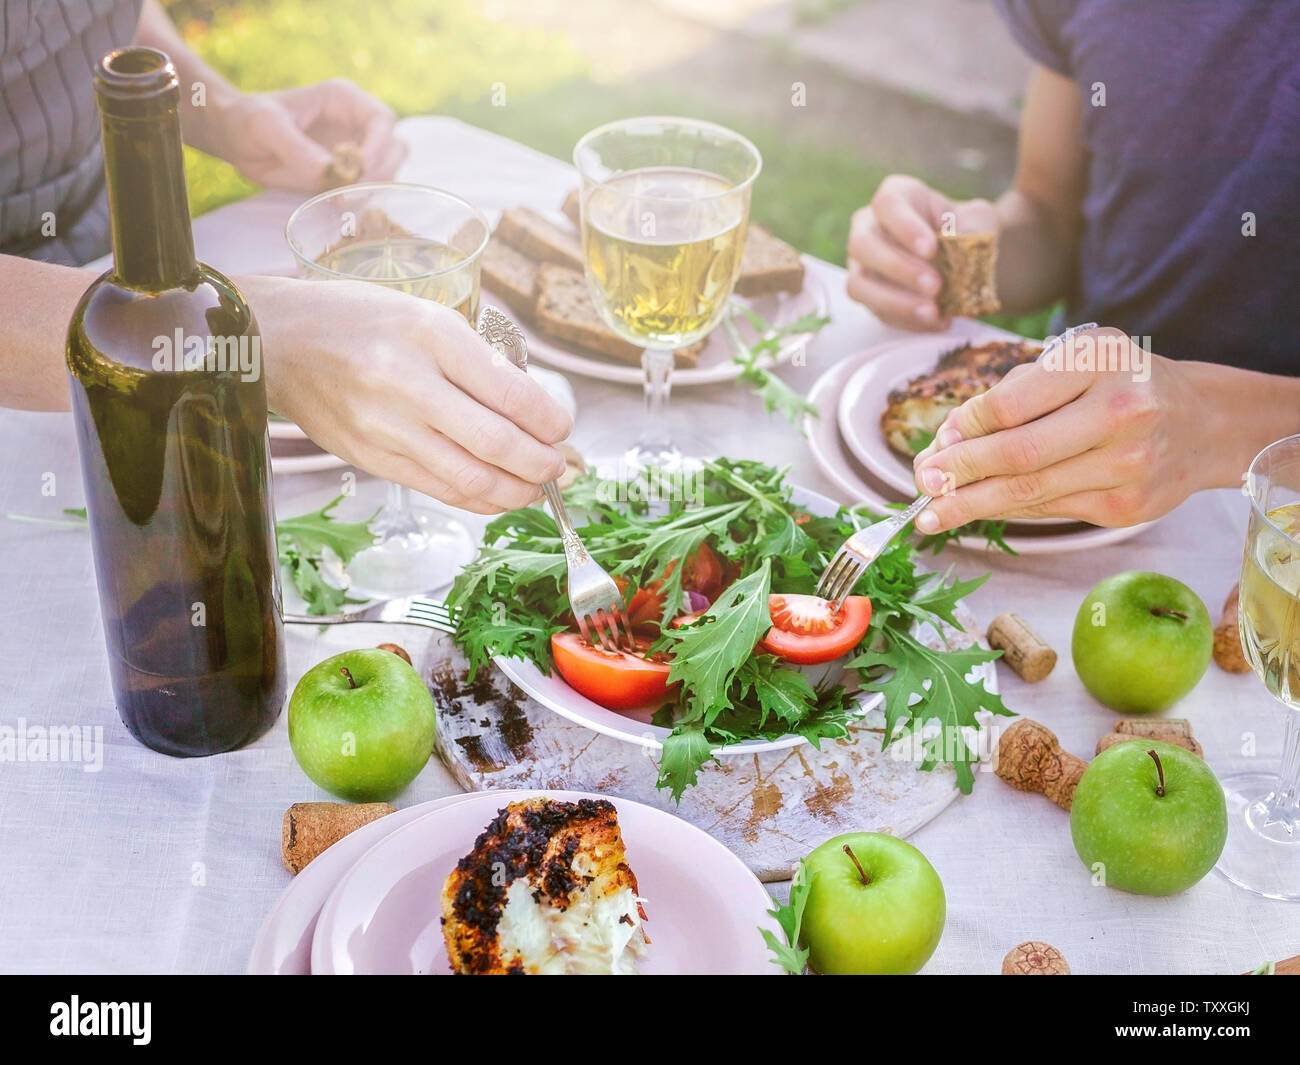 Les gens mangent dans le jardin à la table. Le dîner avec vin concept dans l'air frais. Poissons de mer grillés et des salades de légumes et d'herbes. Méditerranée Banque D'Images